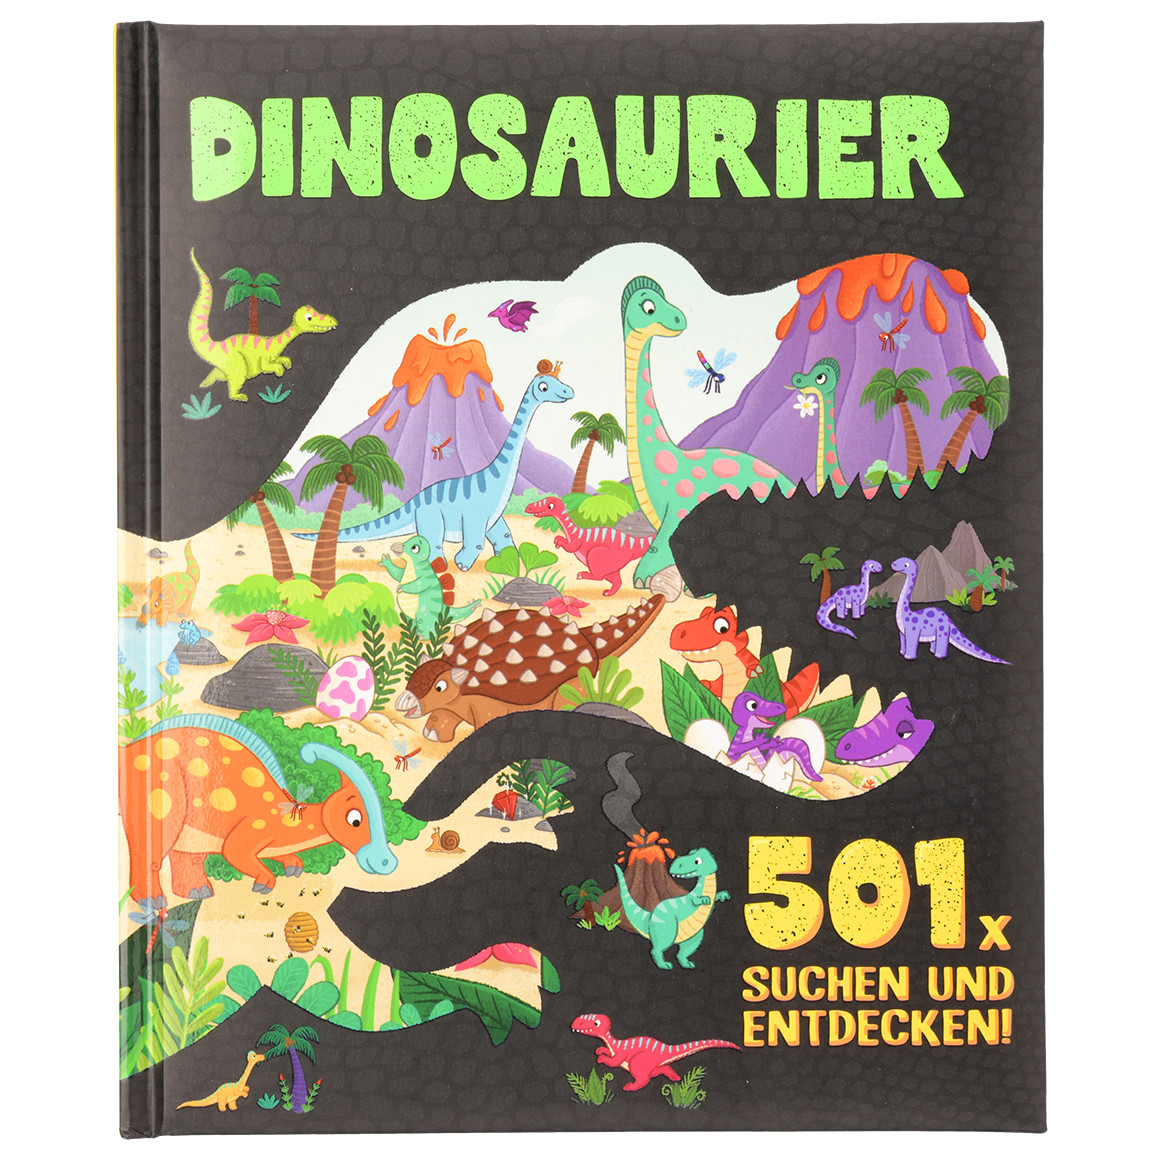 Dinosaurier Wimmelbuch zum Mitsuchen von Topolino